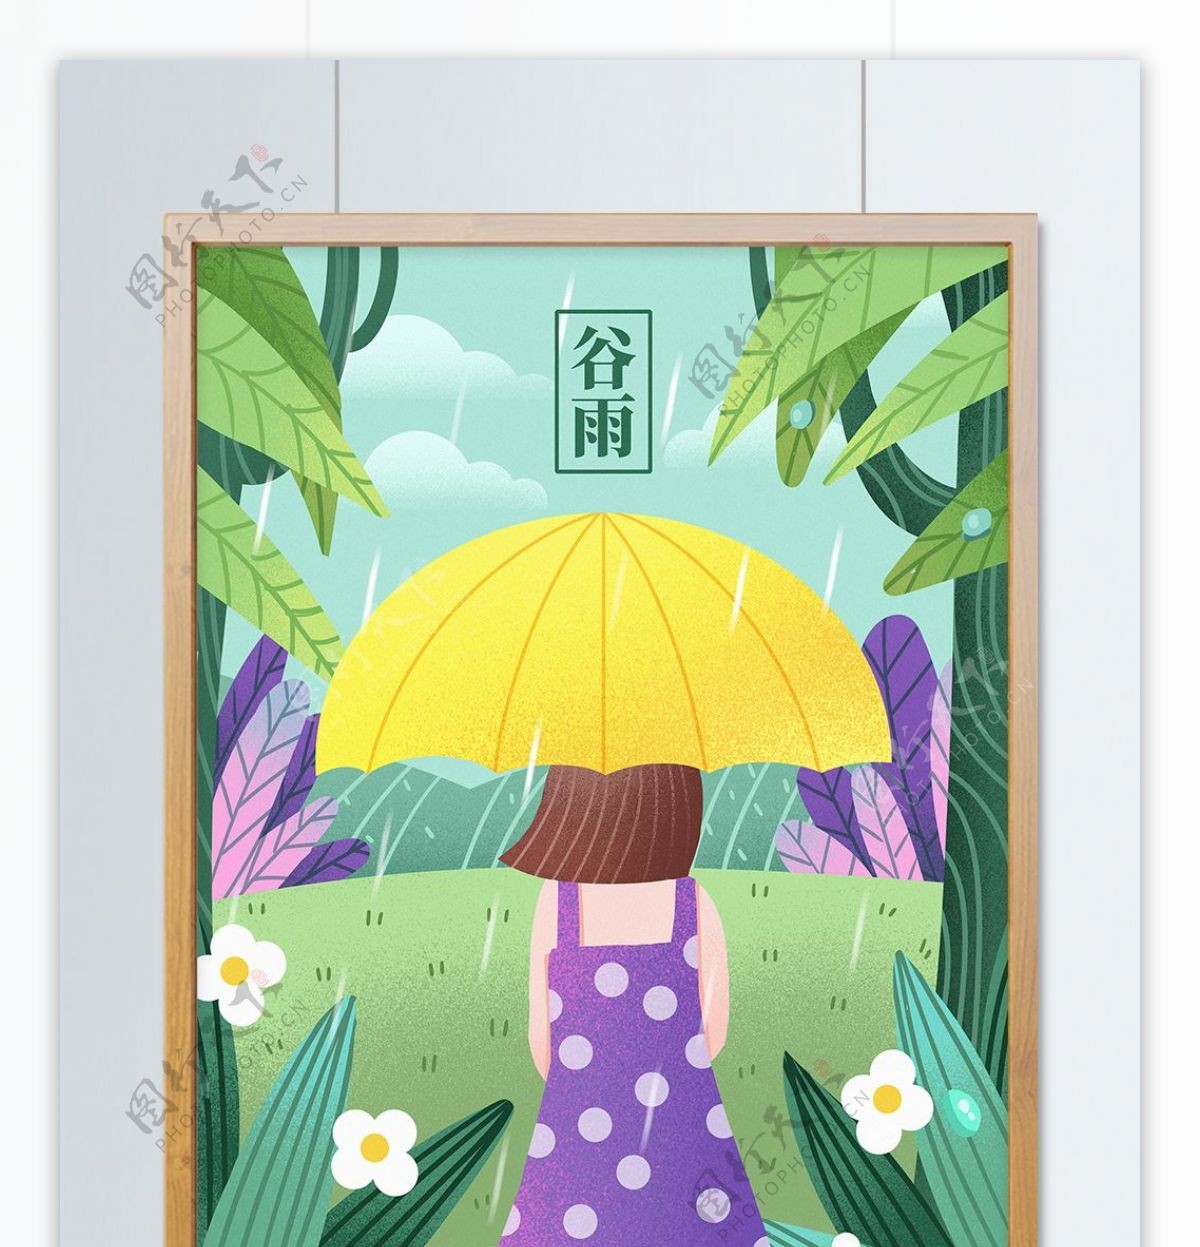 二十四节气谷雨打伞的女孩插画绘画